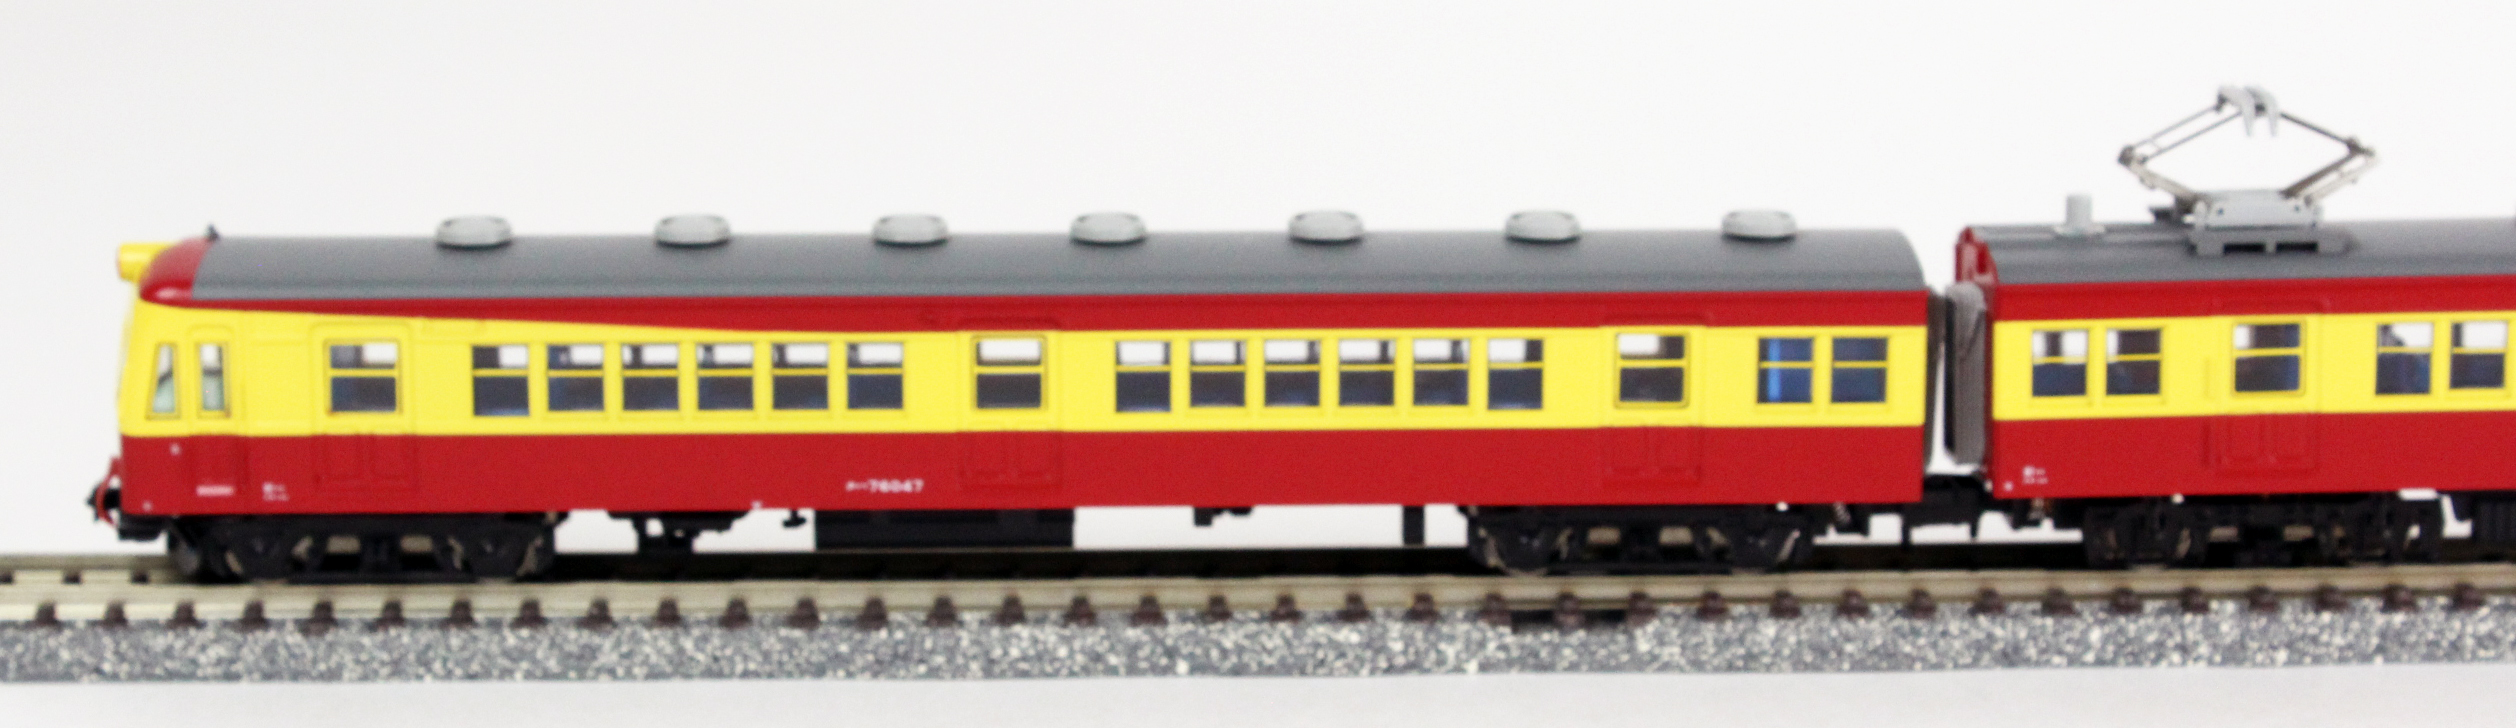 マイクロエース A1284 70系-300・新潟色 6両セット | 鉄道模型 